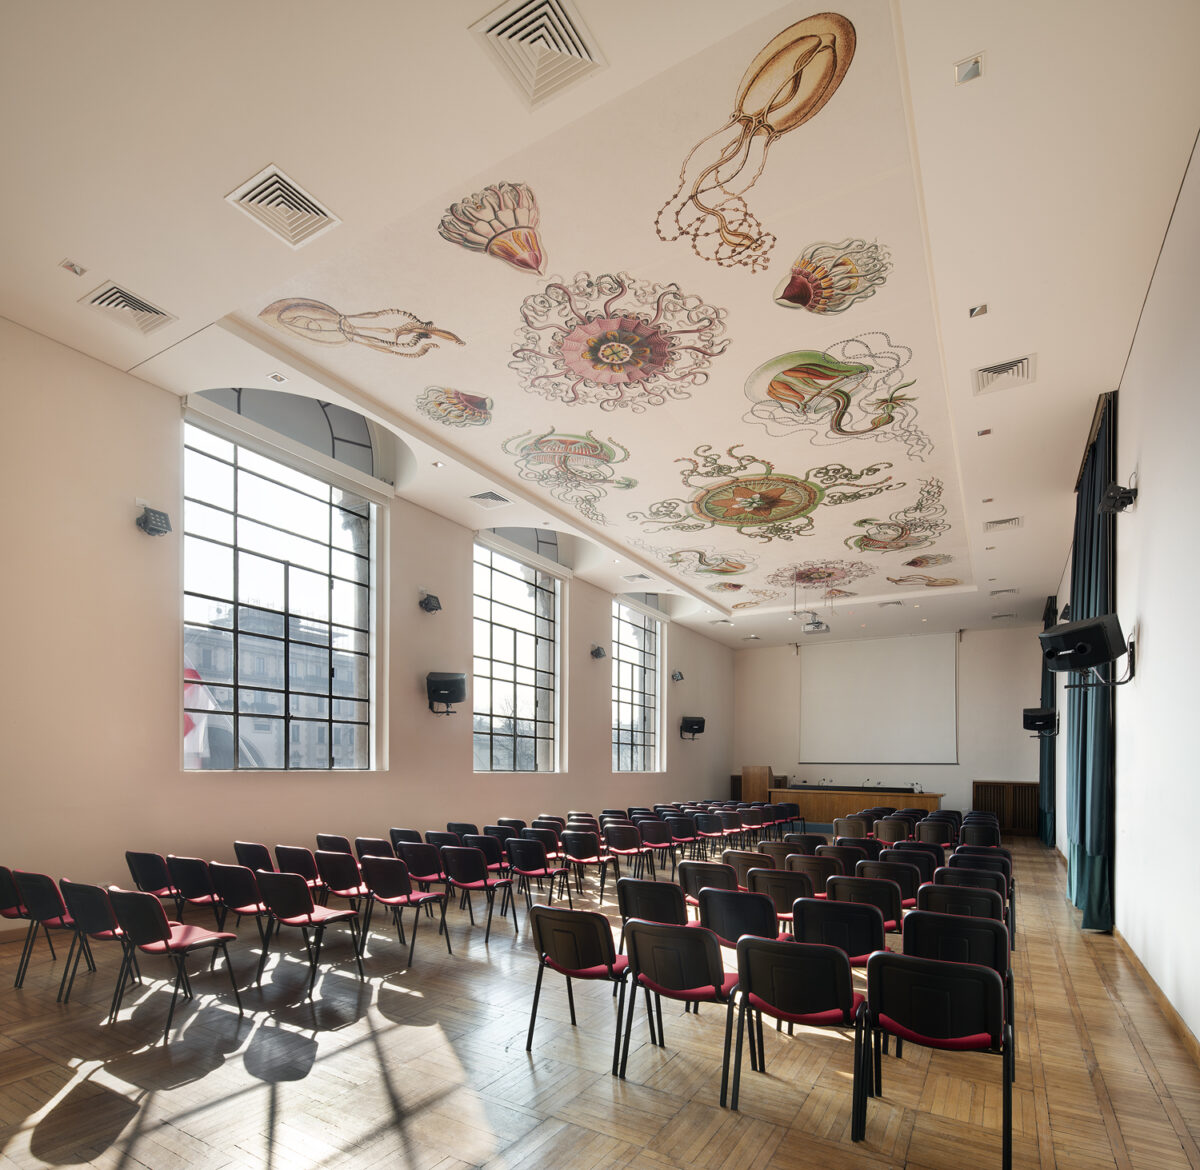 sala-conferenze-poltrone-rosse-soffitto-con-panelli-decorati-disegni-di-haeckel-meduse-museo-storia-naturale-milano